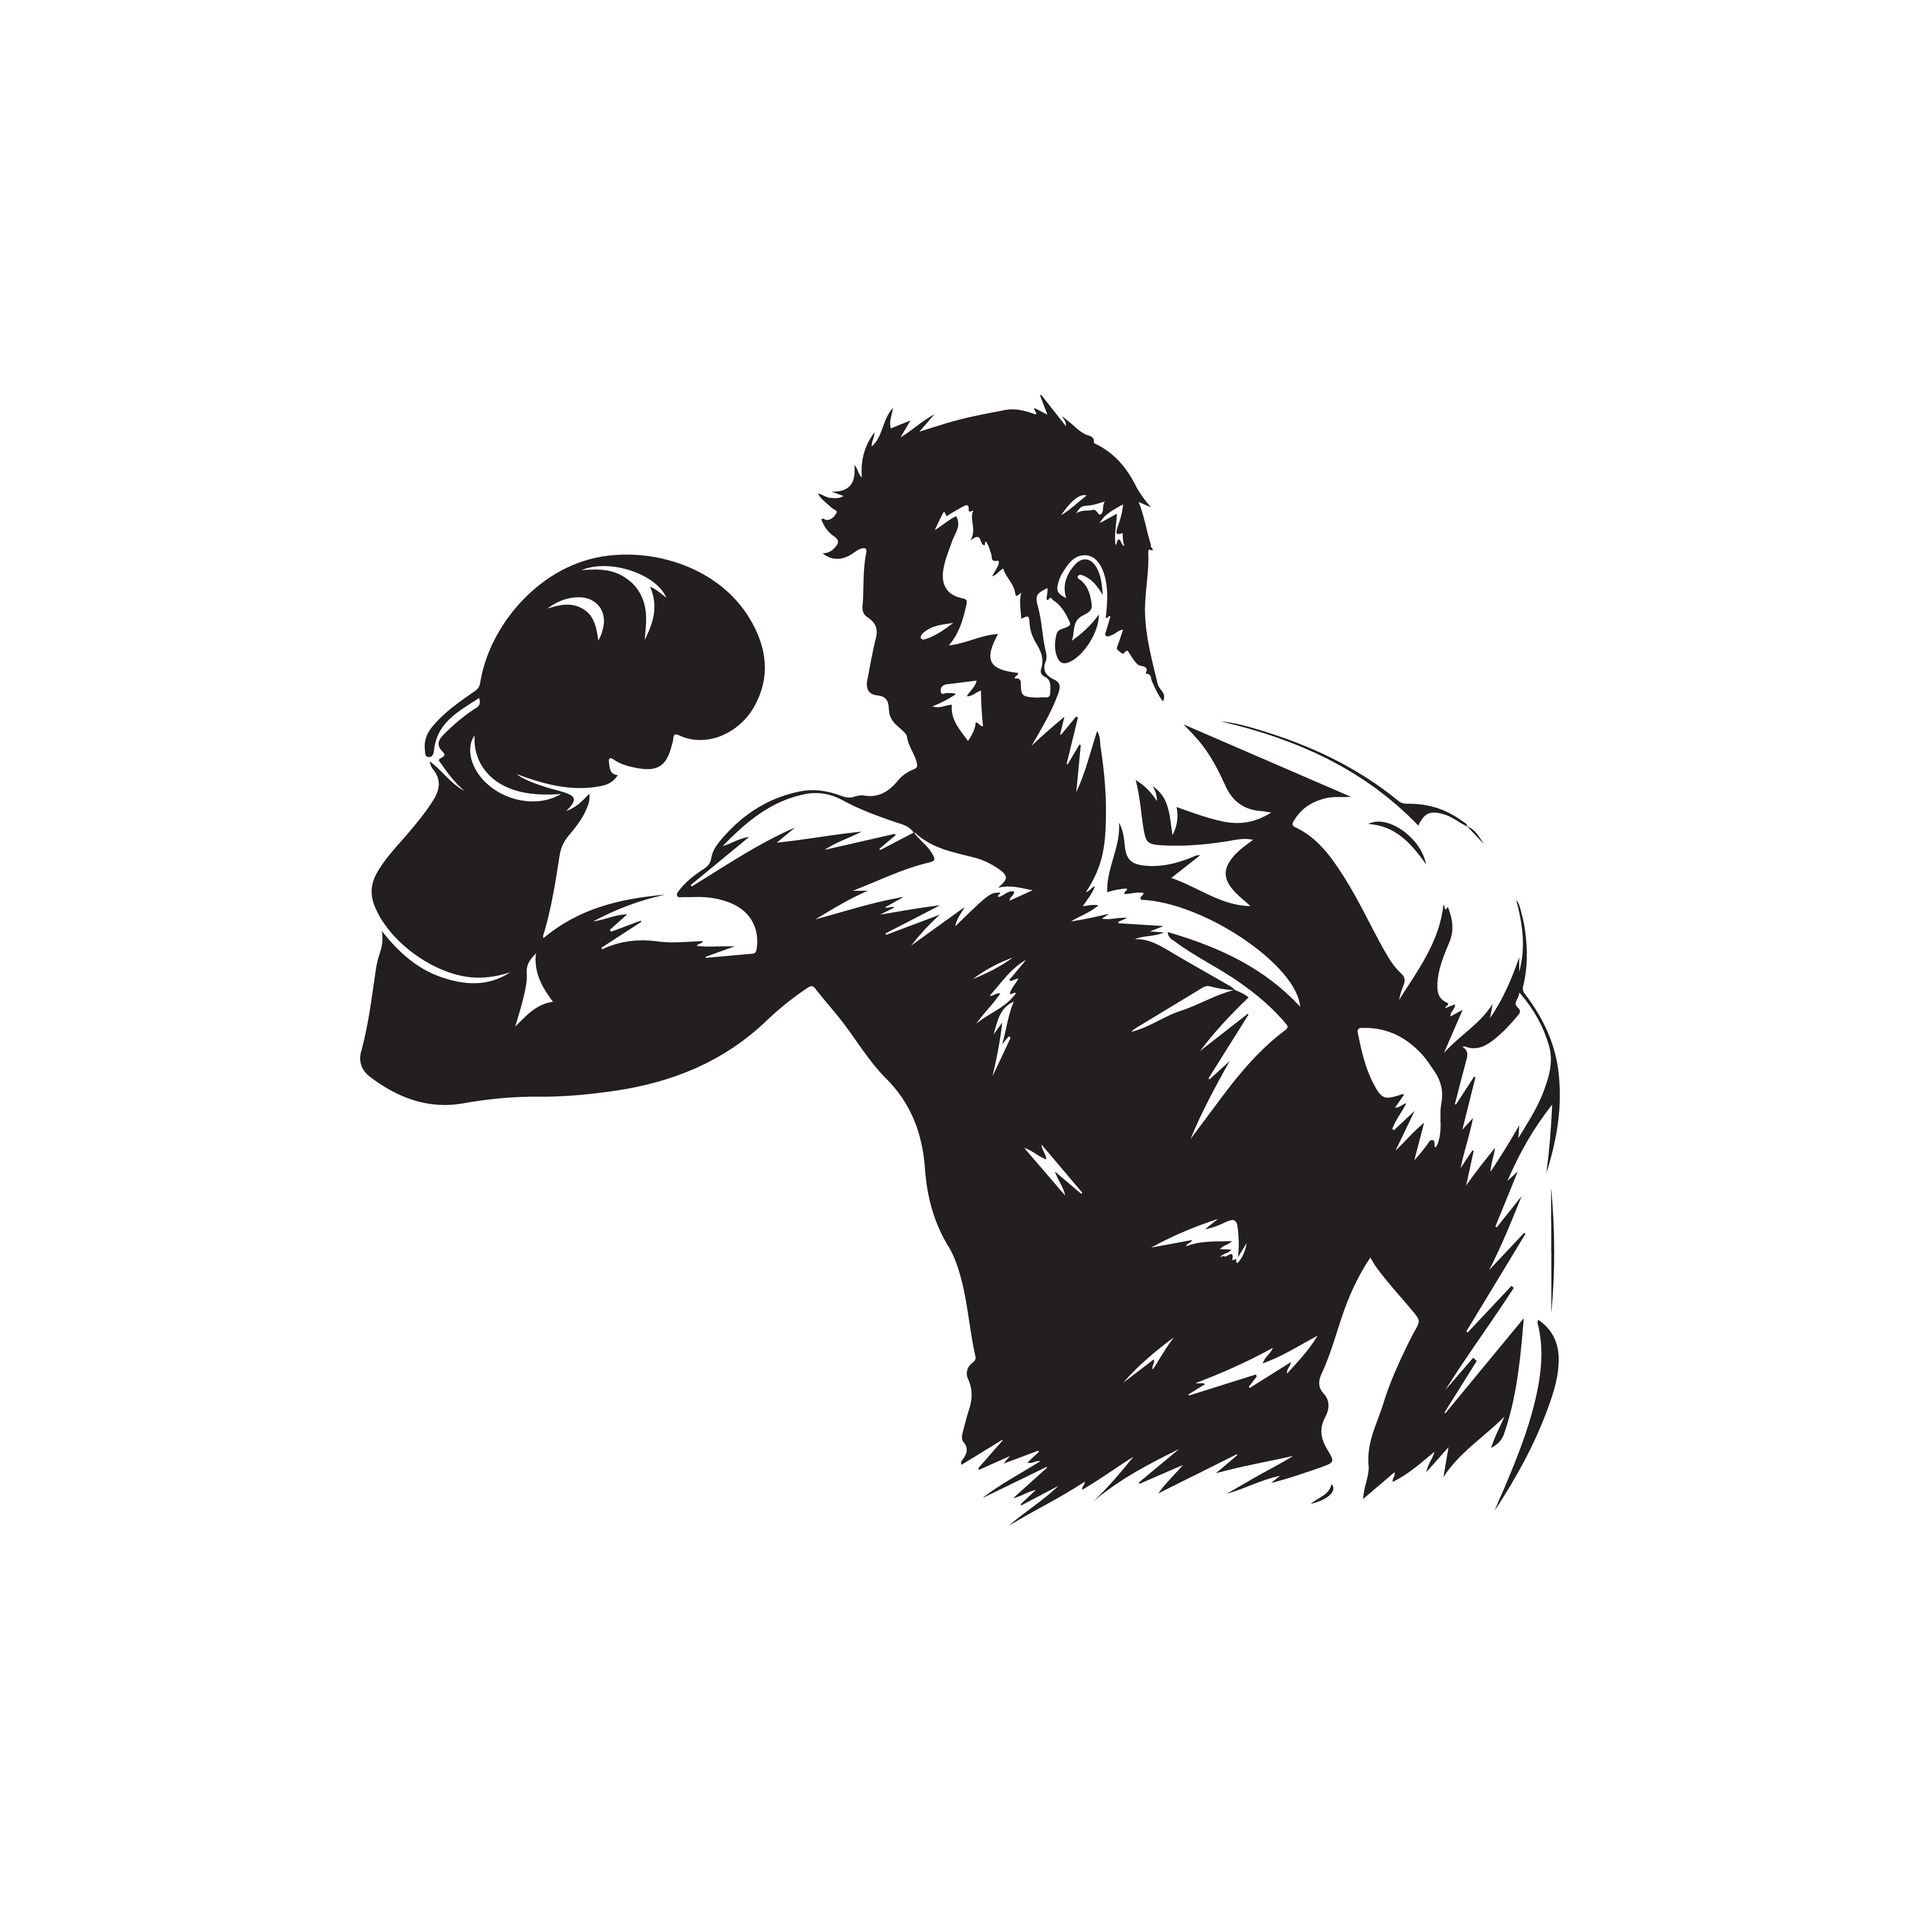 Icono de boxeador. hombre con guantes de boxeo y casco. signo de luchador